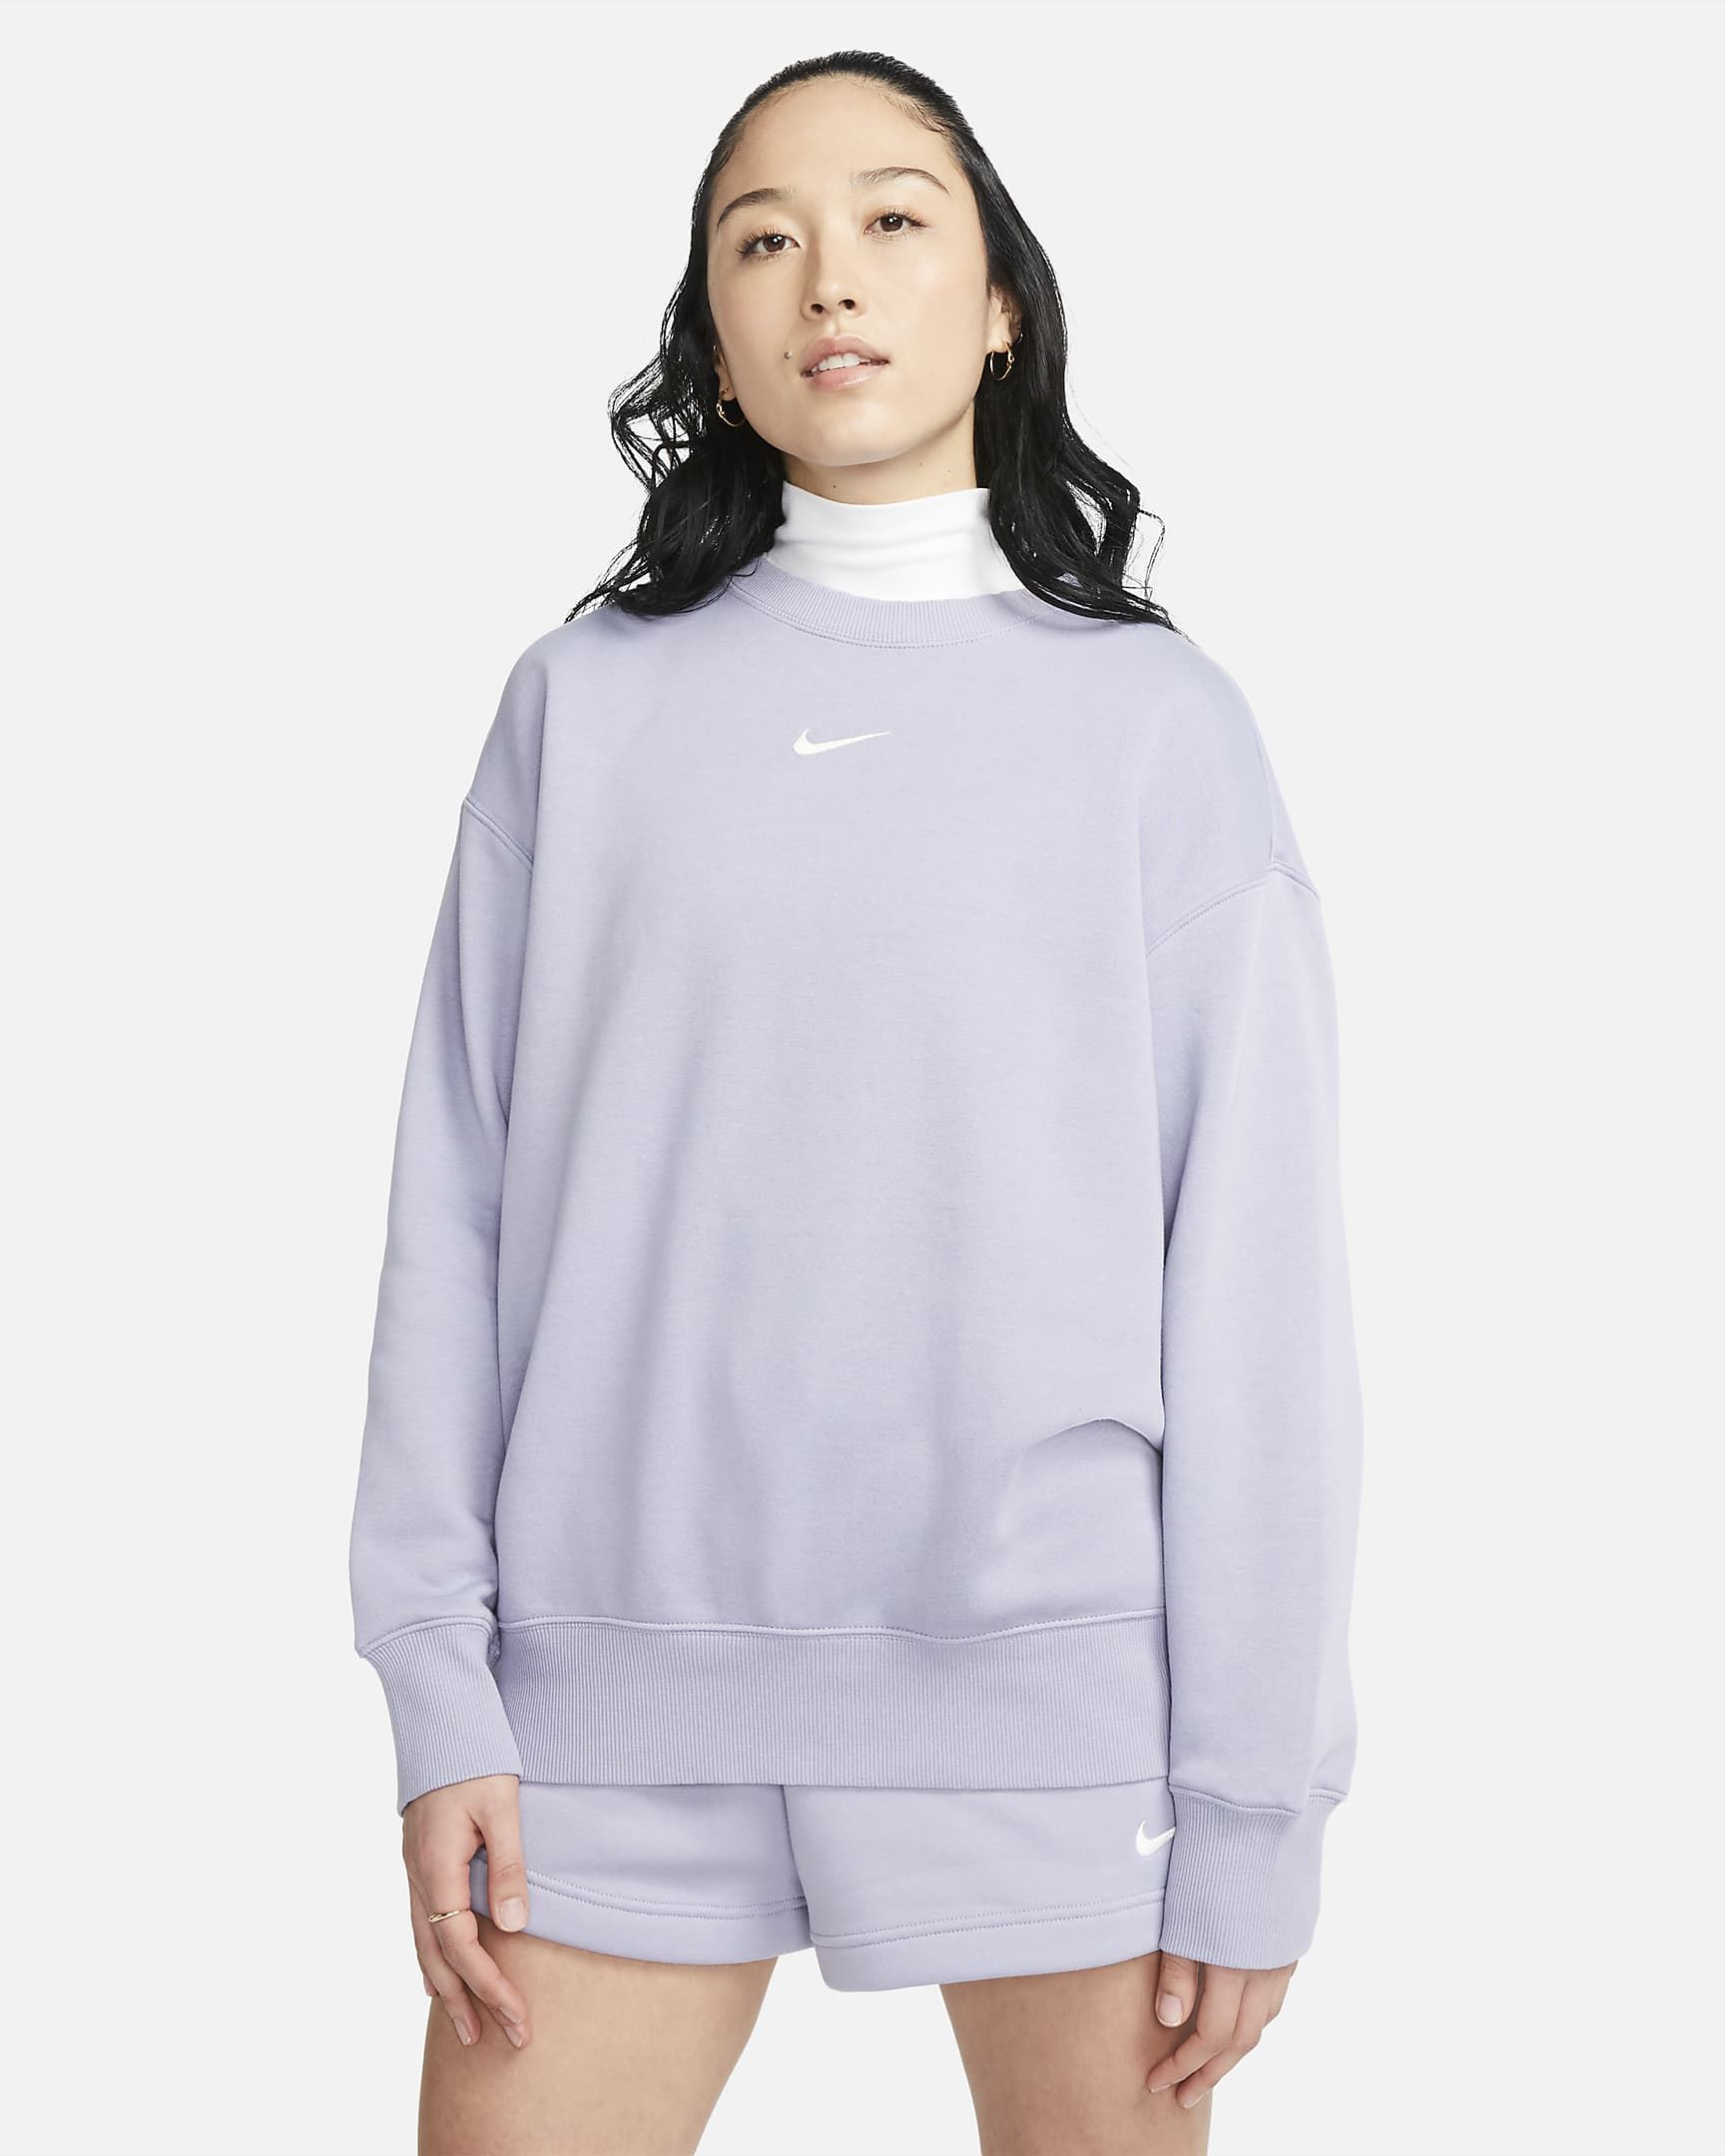 Nike Sportswear Phoenix Fleece Women's Oversized Crewneck Sweatshirt. Nike.com | Nike (US)